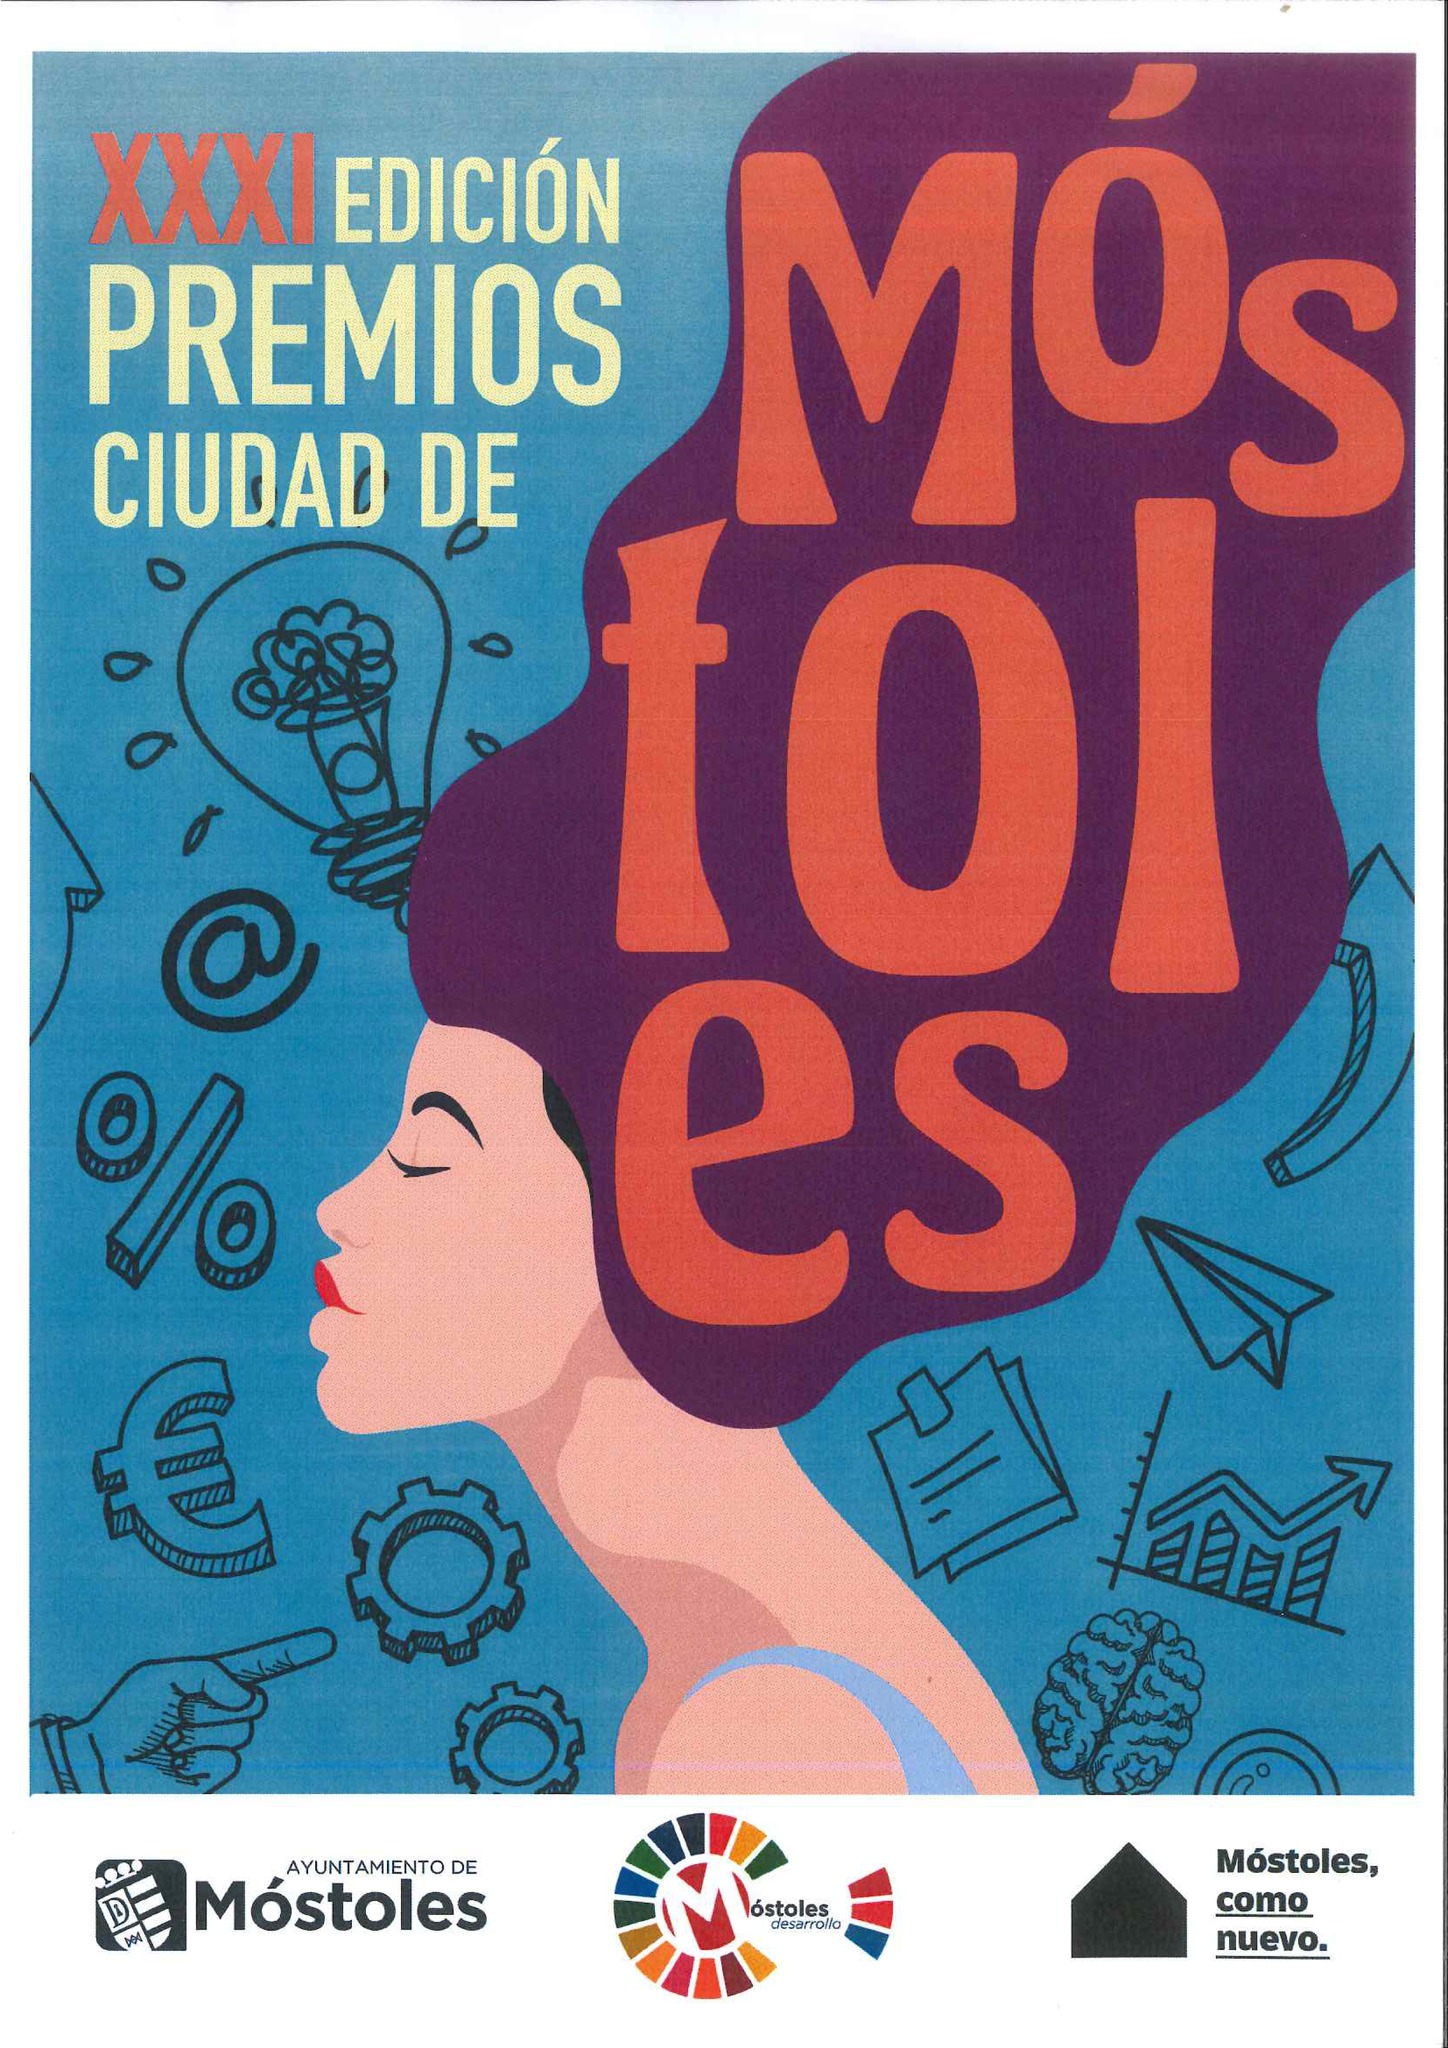 XXXI EDICIÓN DE LOS PREMIOS CIUDAD DE MÓSTOLES